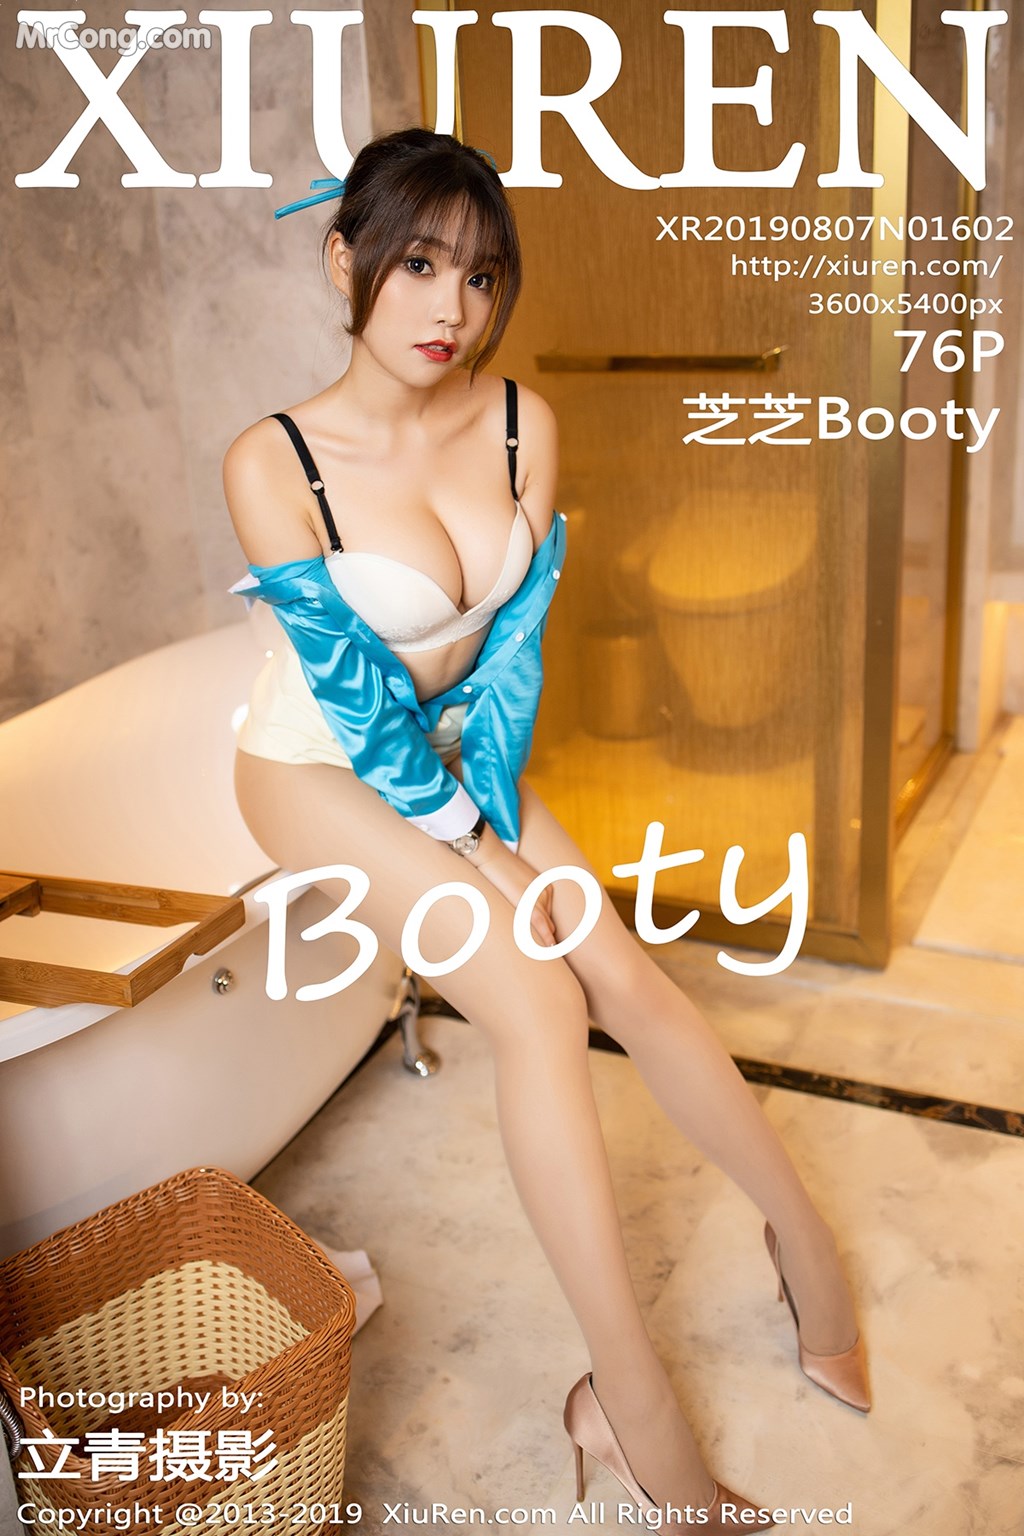 XIUREN No.1602: Booty (芝芝) (77 pictures) photo 1-0